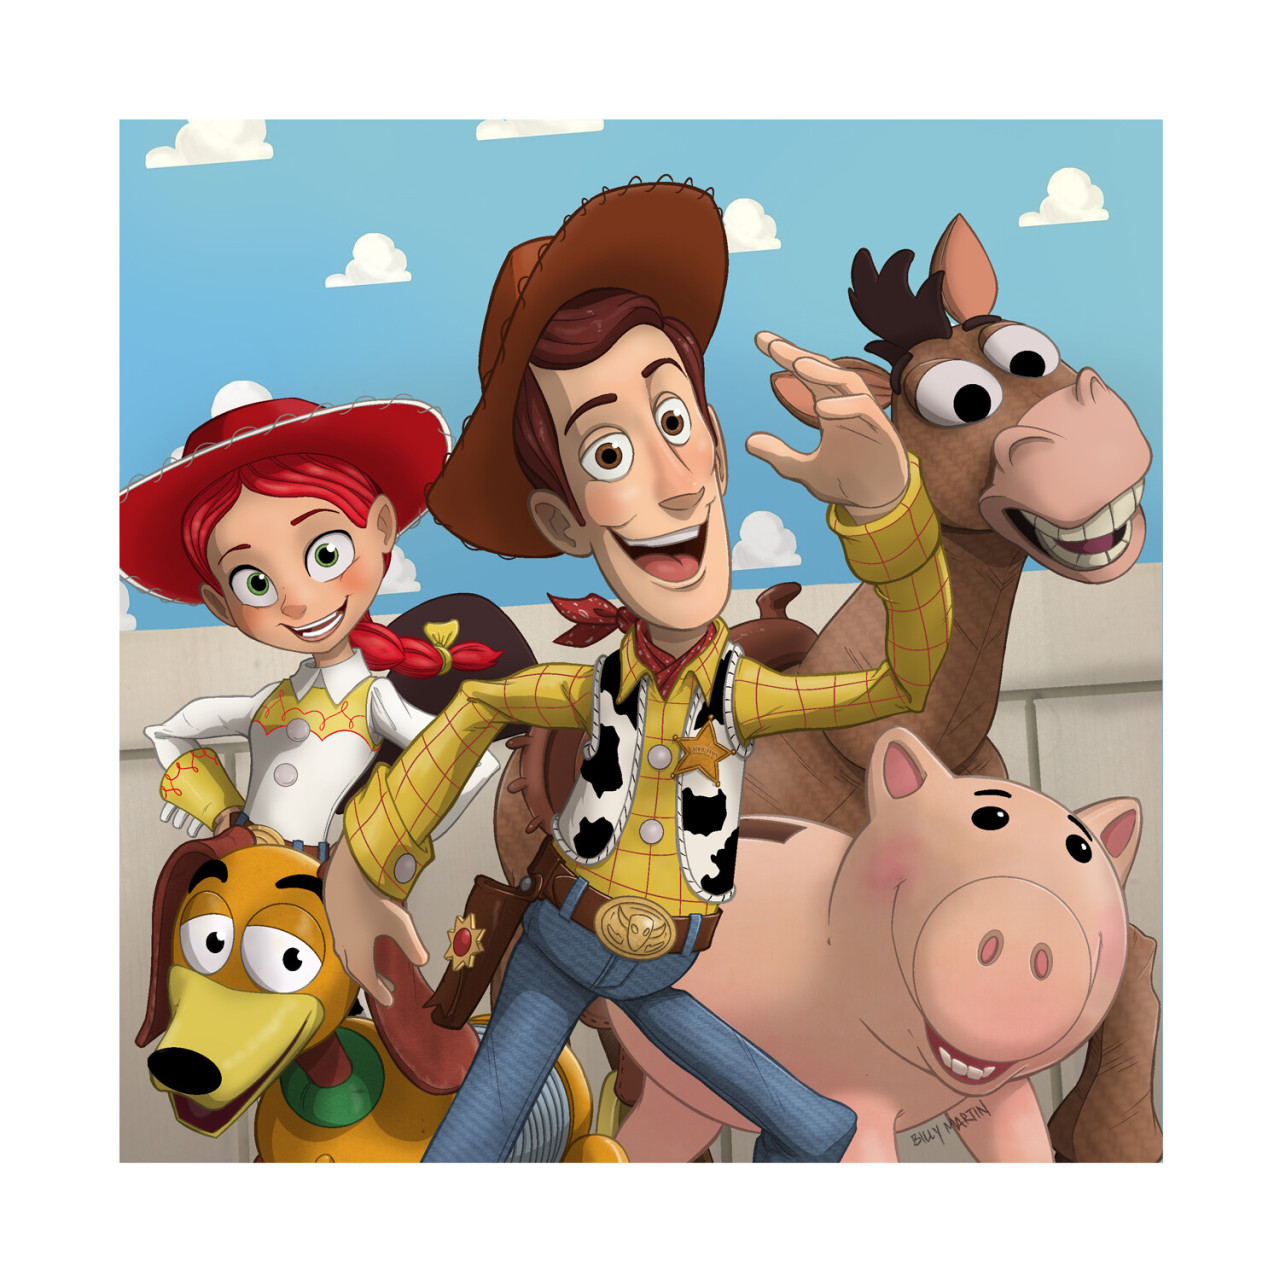 Toy Story by Billy Martin #toy story#Billy Martin#digital art#art#illustration#pixar#disney#sheriff woody#buzz lightyear#zurg#emperor zurg #mr. potato head #rex#jessie#slinky dog